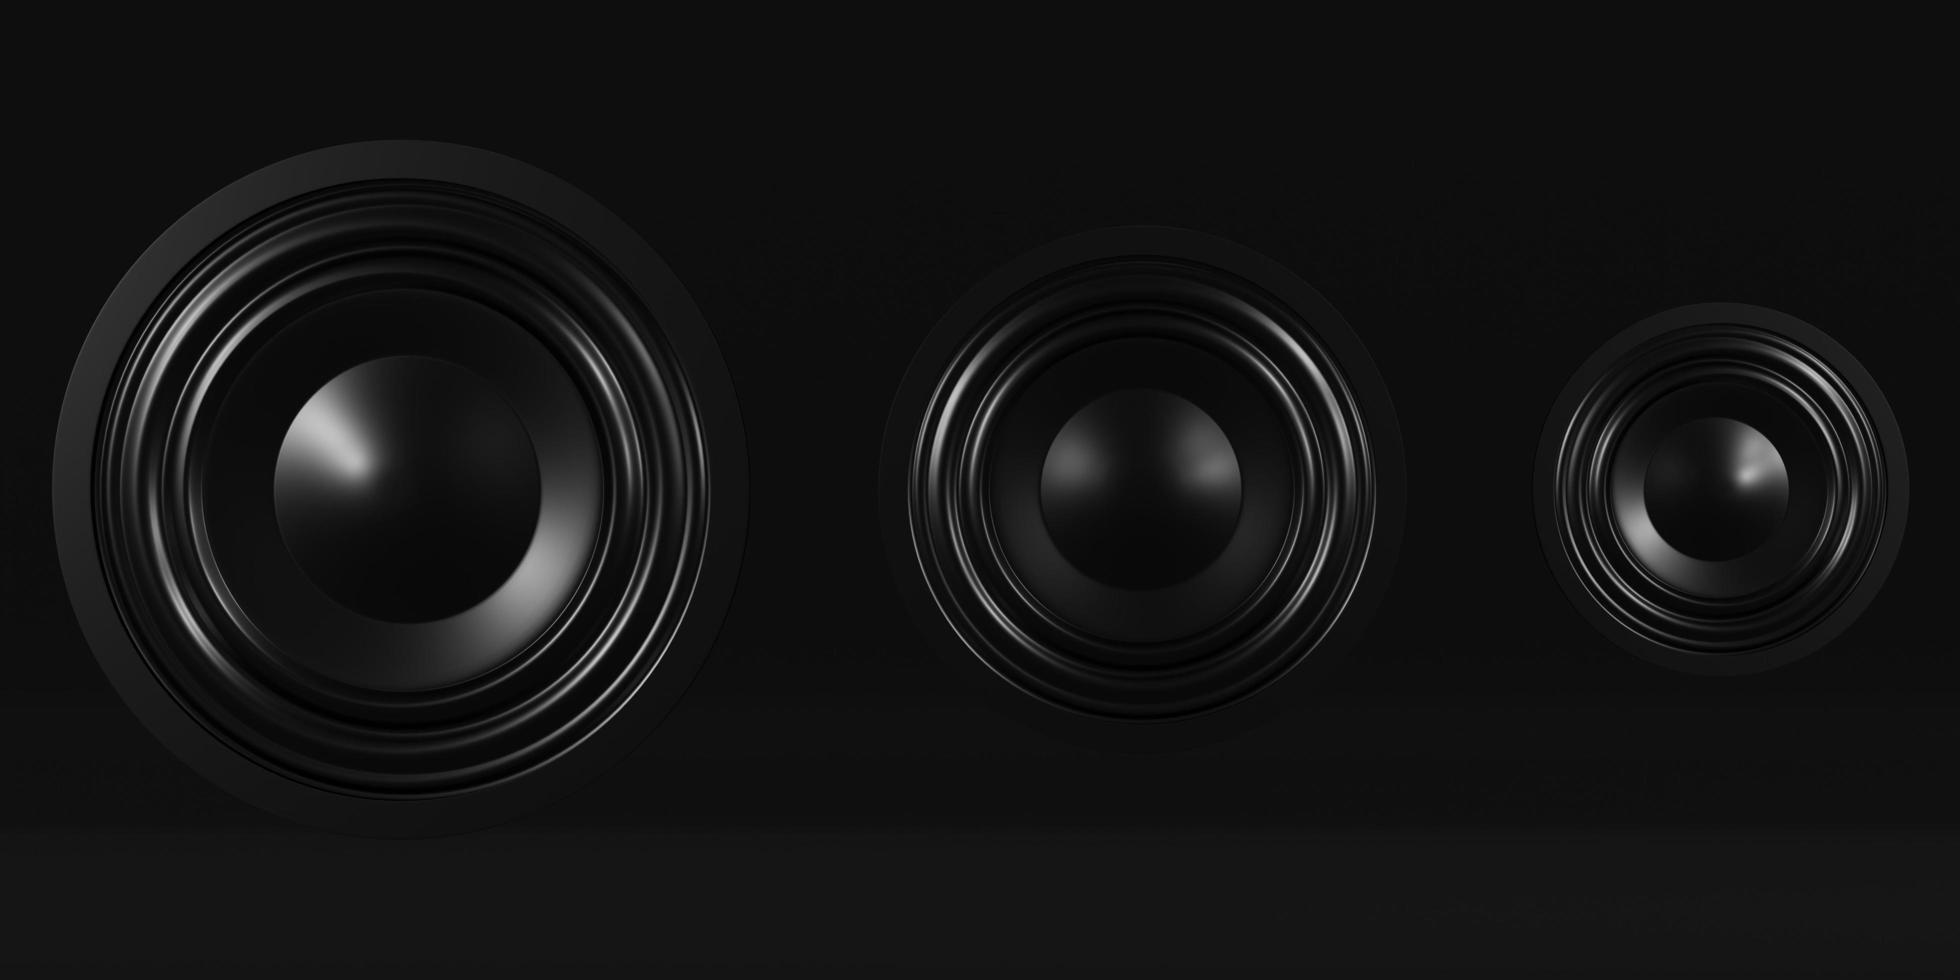 haut-parleur audio de musique rendu 3d. technologie sound power bass système stéréo fond de studio noir avec espace de copie sur la lumière sombre. illustration de rendu 3d. photo